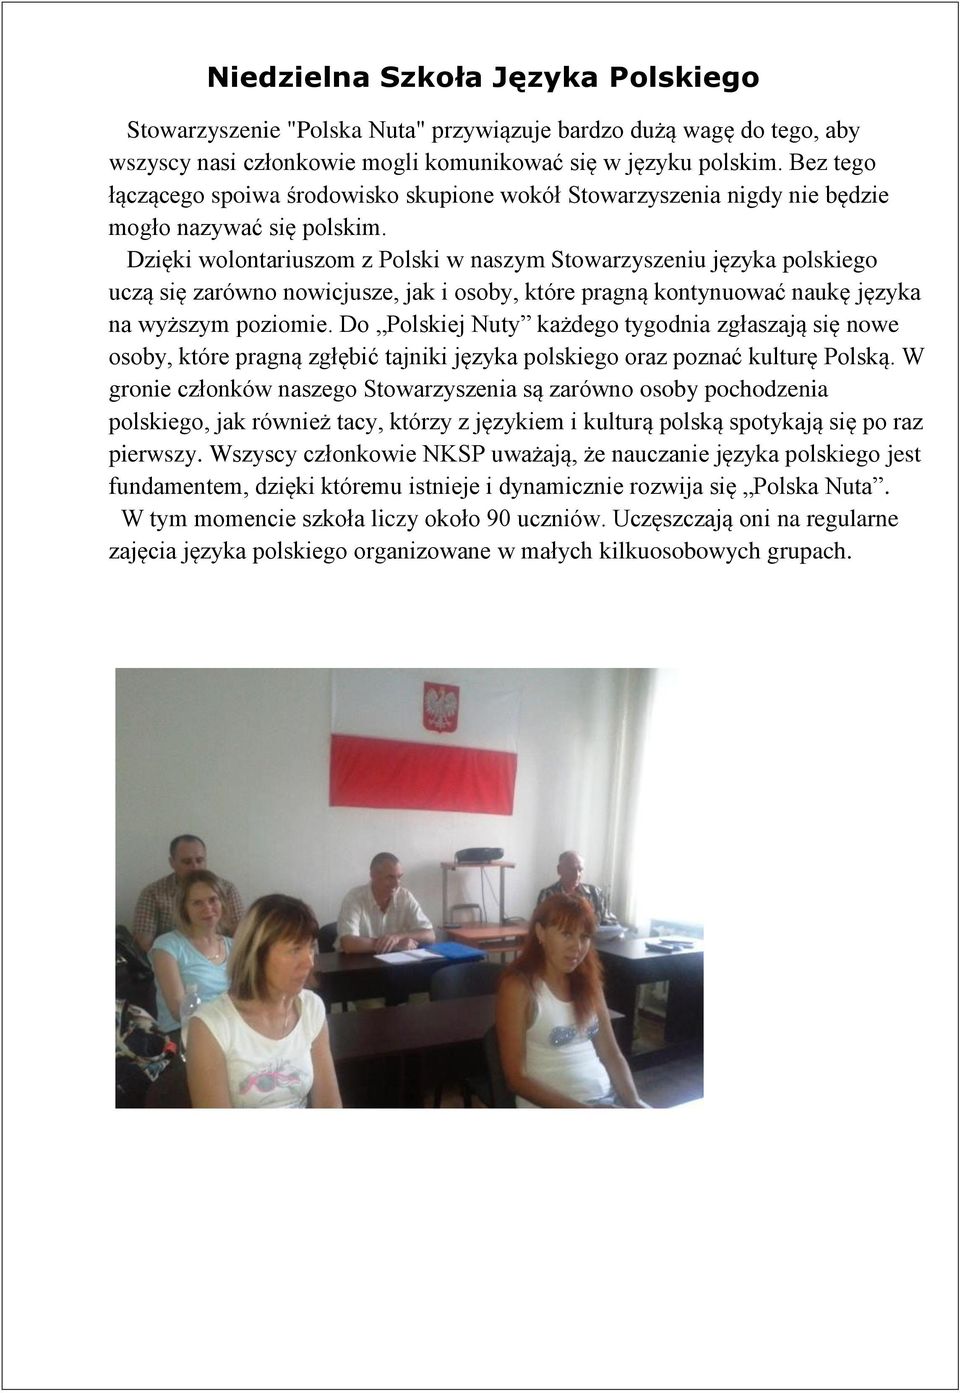 Dzięki wolontariuszom z Polski w naszym Stowarzyszeniu języka polskiego uczą się zarówno nowicjusze, jak i osoby, które pragną kontynuować naukę języka na wyższym poziomie.